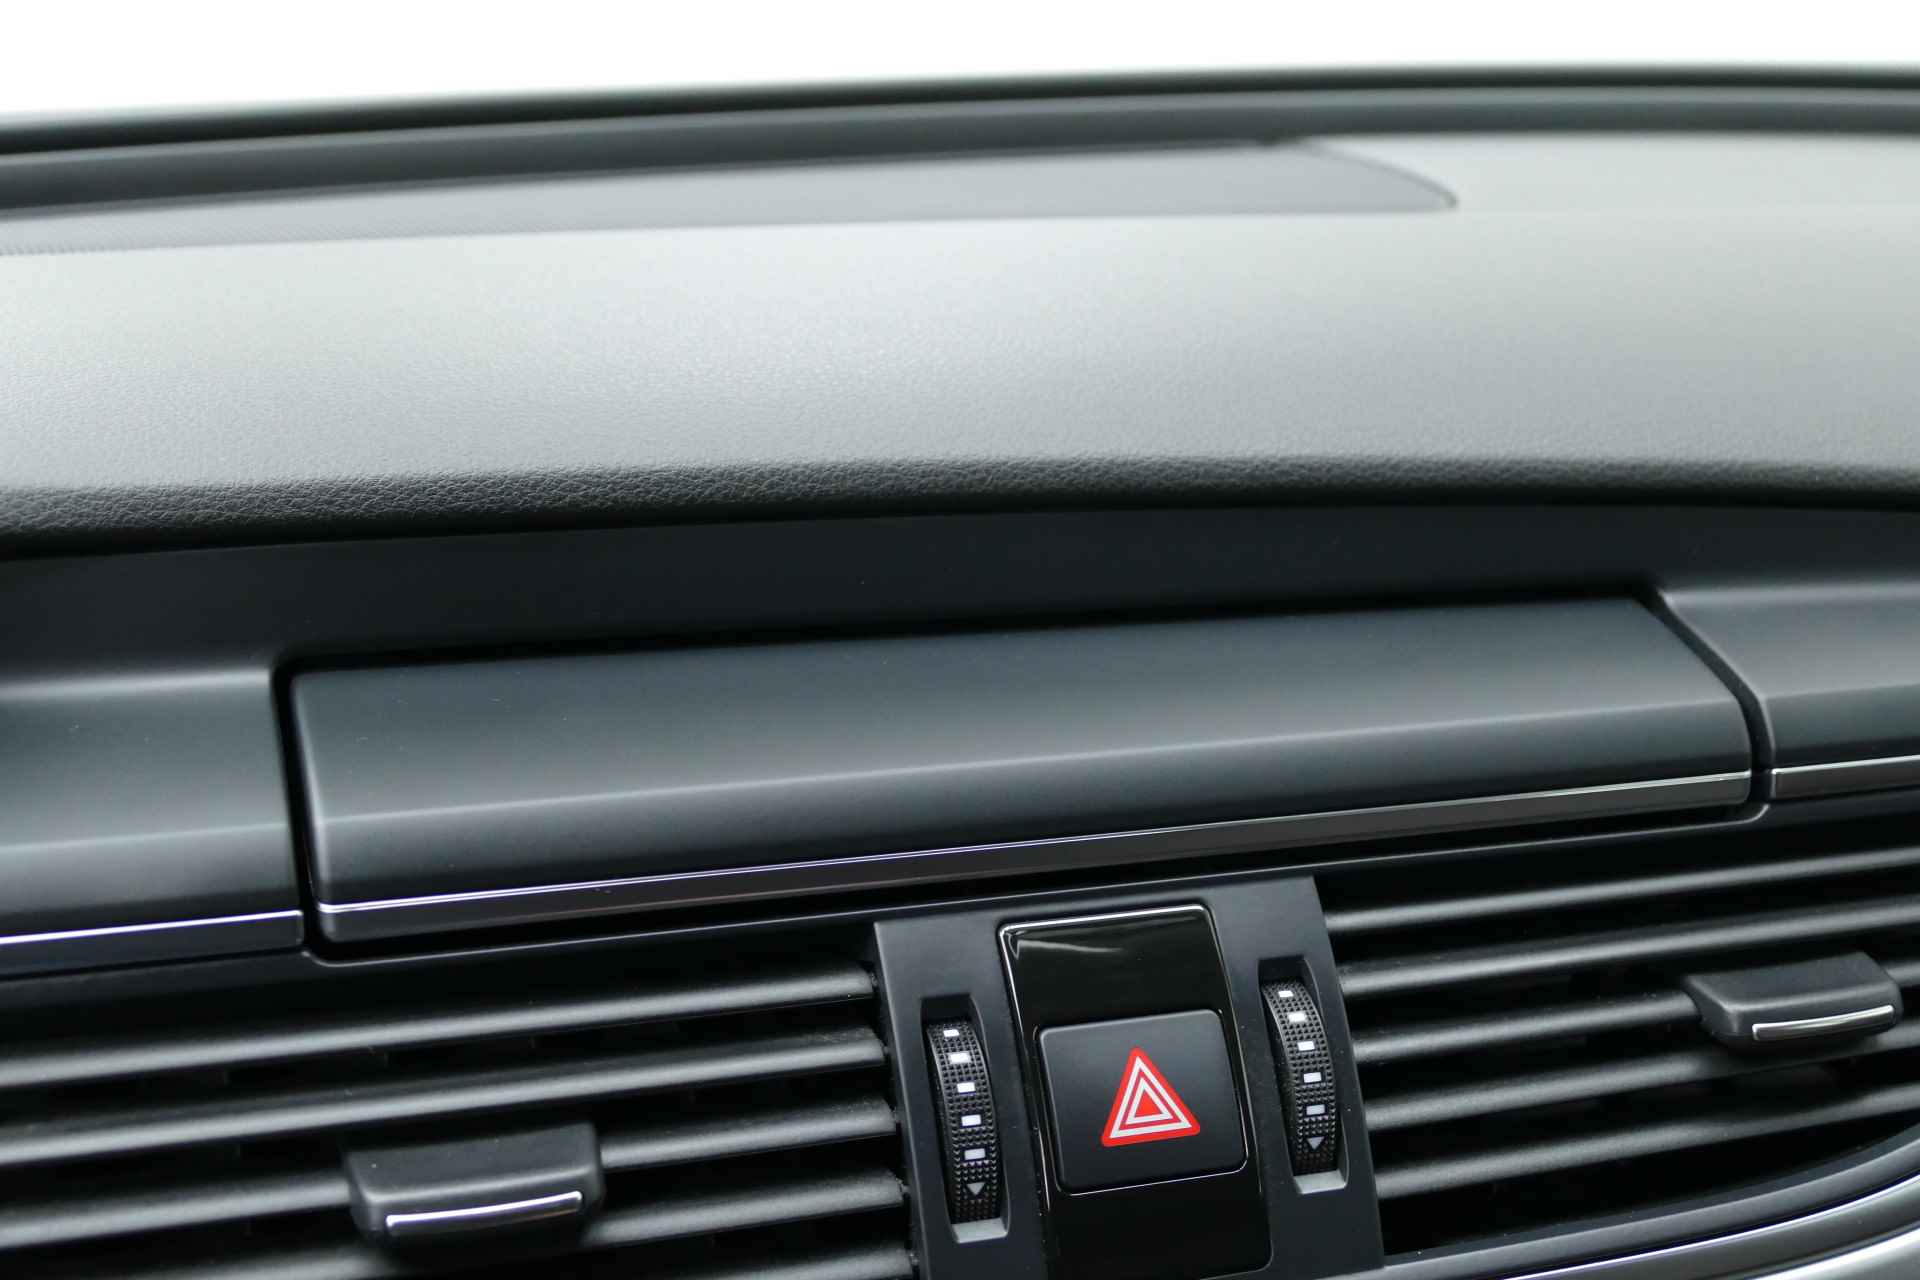 Audi A6 Avant 2.0 TFSI Business Edition CDN Motor. Leer, Navi, Clima, Cruise, PDC V+A, 17"LM Velgen - 28/35